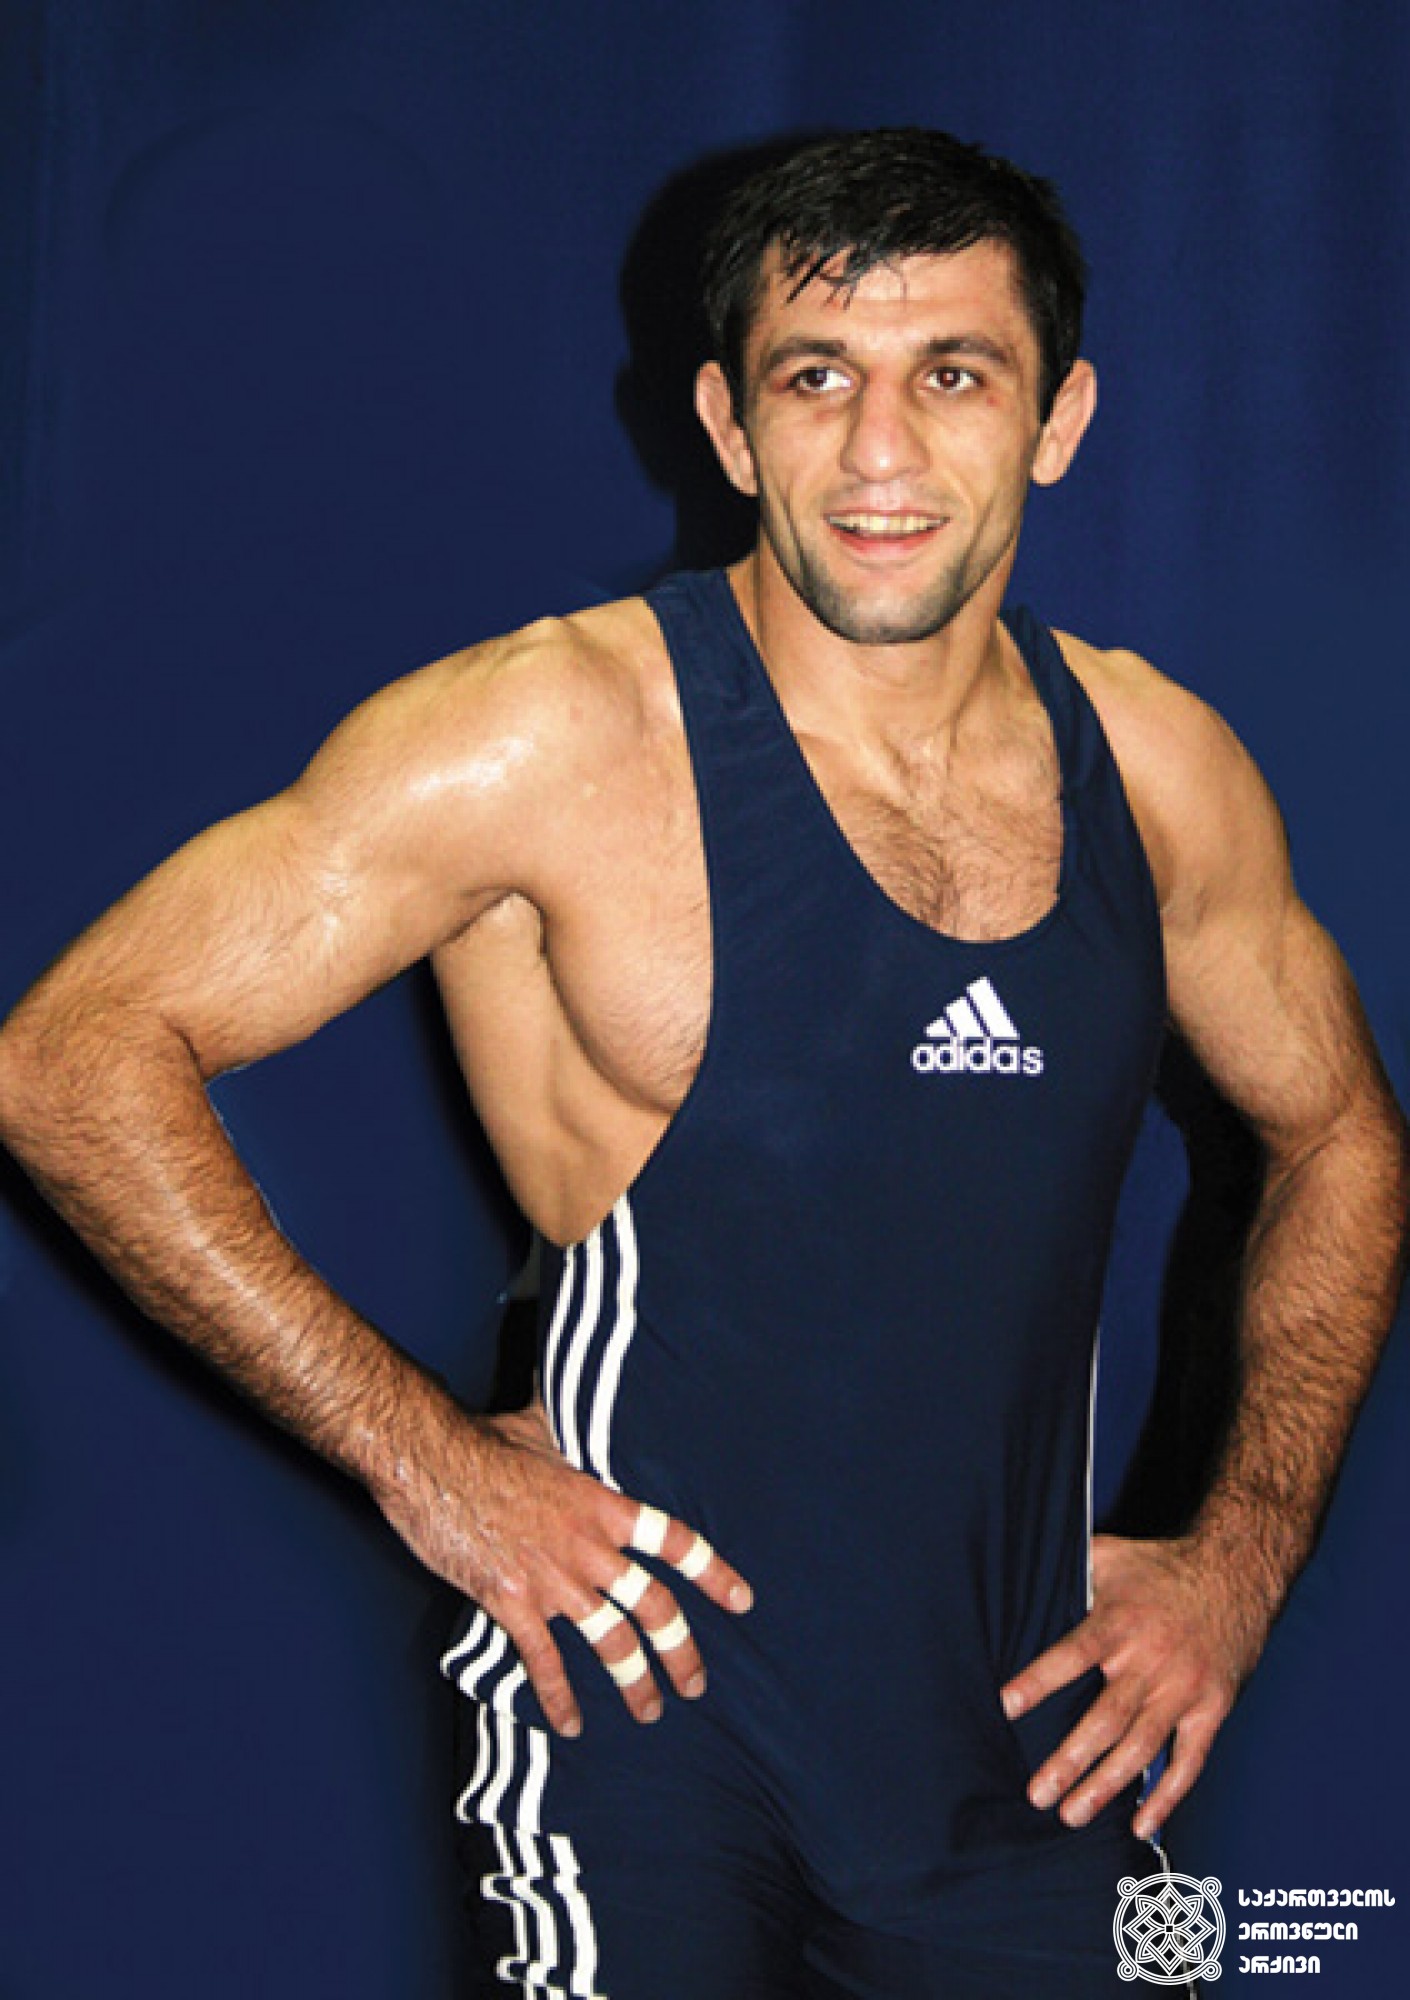 ოთარ თუშიშვილი. <br>
XXIX ოლიმპიური თამაშების მესამე პრიზიორი თავისუფალ ჭიდაობაში (2008 წელი, პეკინი). <br>
ფოტო საქართველოს ეროვნული ოლიმპიური კომიტეტის ვებგვერდიდან. <br>
Otar Tushishvili. <br>
Third-prize winner of the XXIX Olympic Games in Wrestling Freestyle (2008, Beijing). <br>
Photo from the web-site of the Georgian National Olympic Committee.